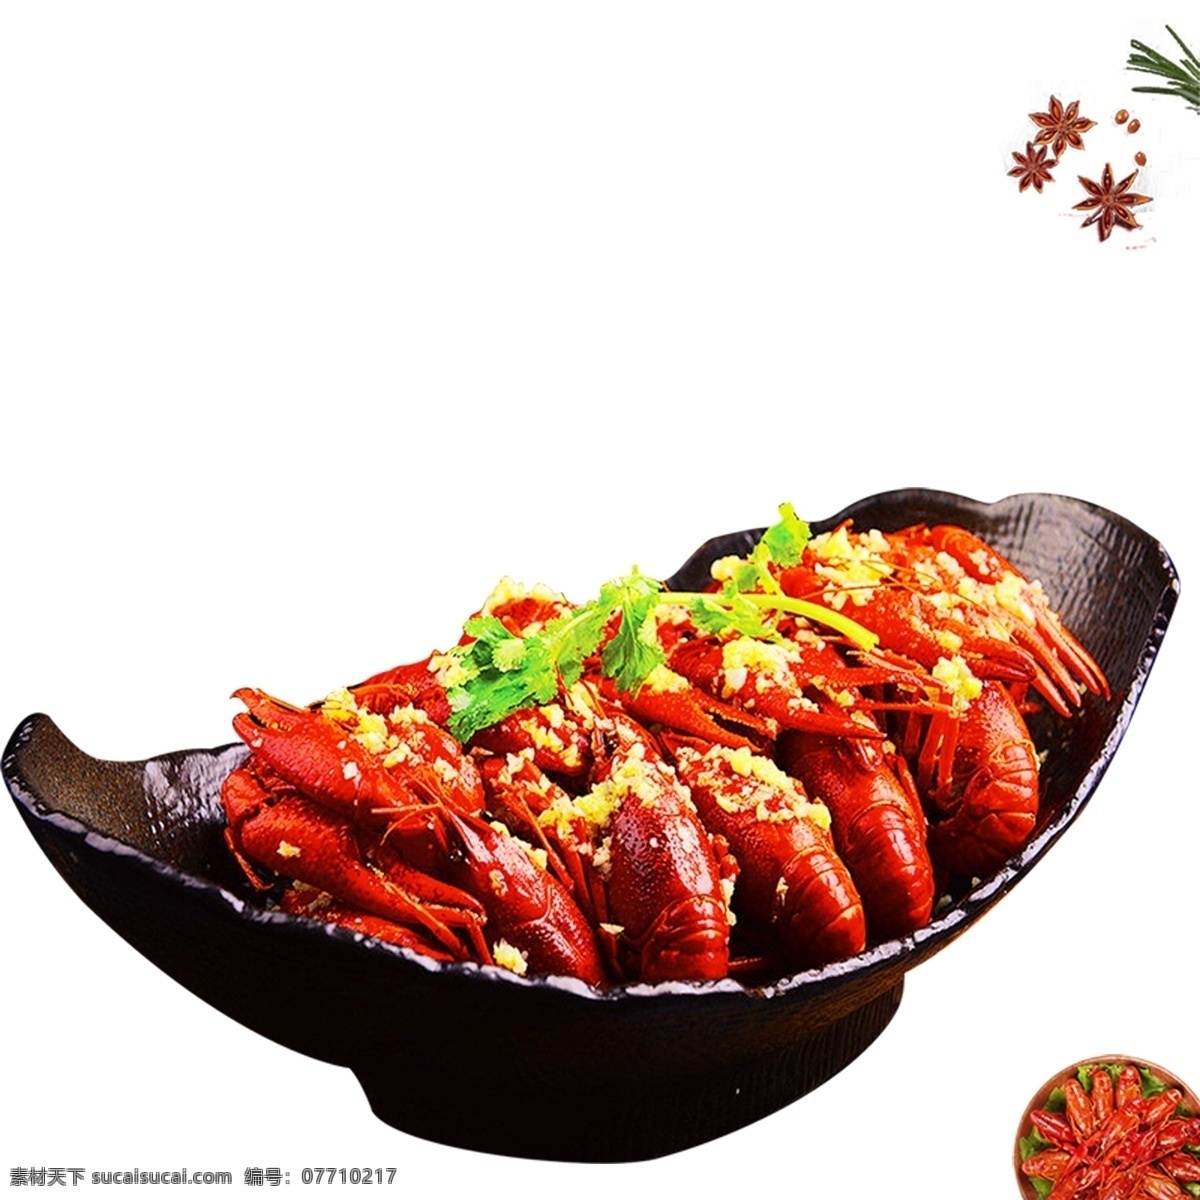 红色 美味 小 龙虾 装饰 元素 卡通食物 卡通美食 背景装饰 小龙虾 麻辣小龙虾 红色小龙虾 美味龙虾